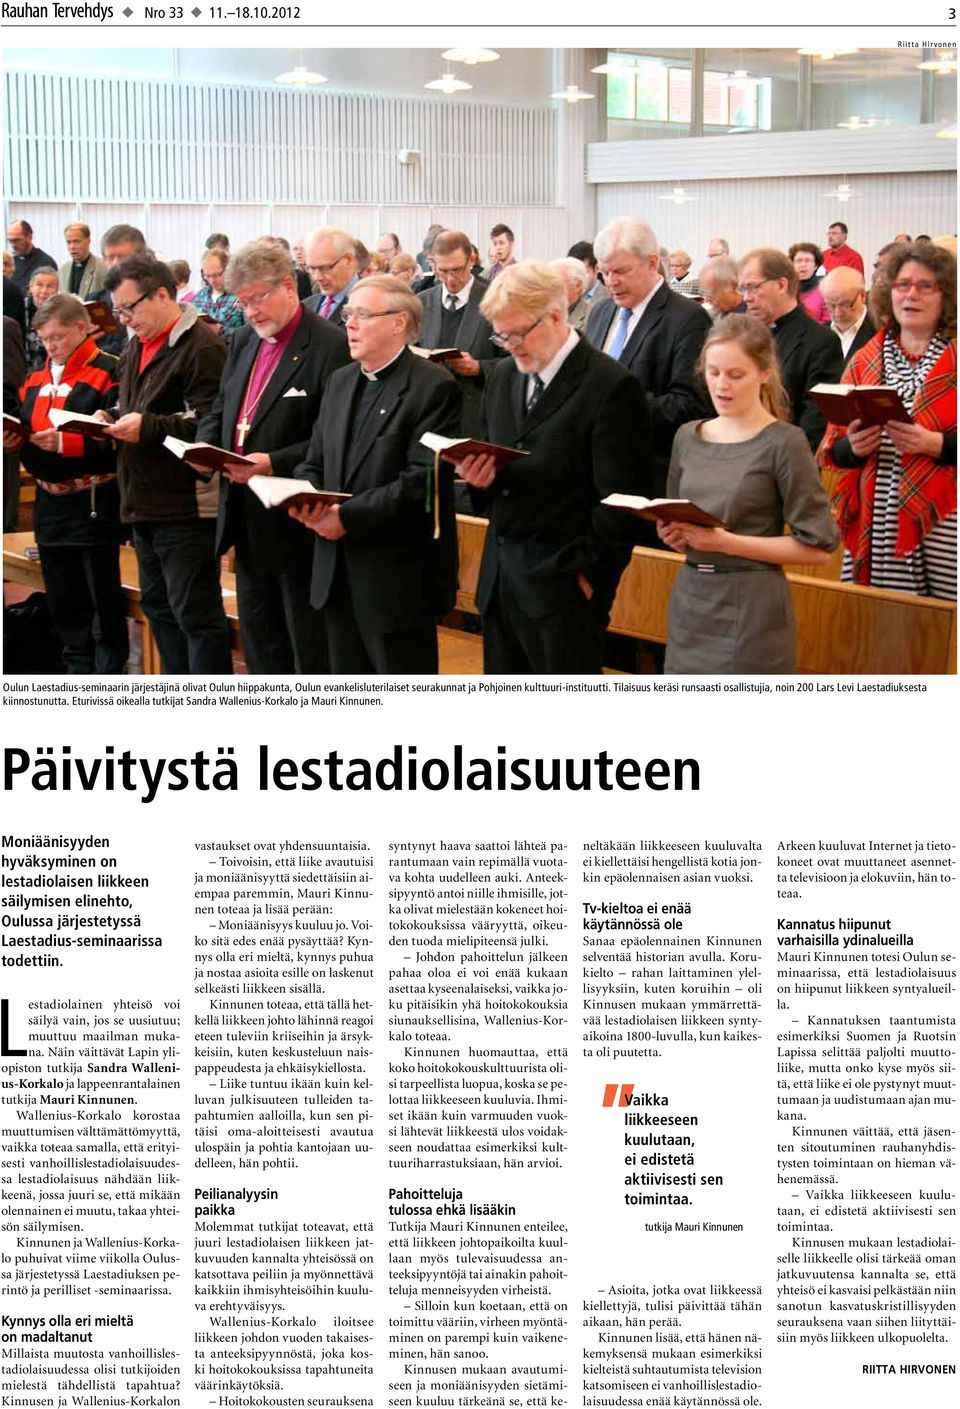 Päivitystä lestadiolaisuuteen Moniäänisyyden hyväksyminen on lestadiolaisen liikkeen säilymisen elinehto, Oulussa järjestetyssä Laestadius-seminaarissa todettiin.